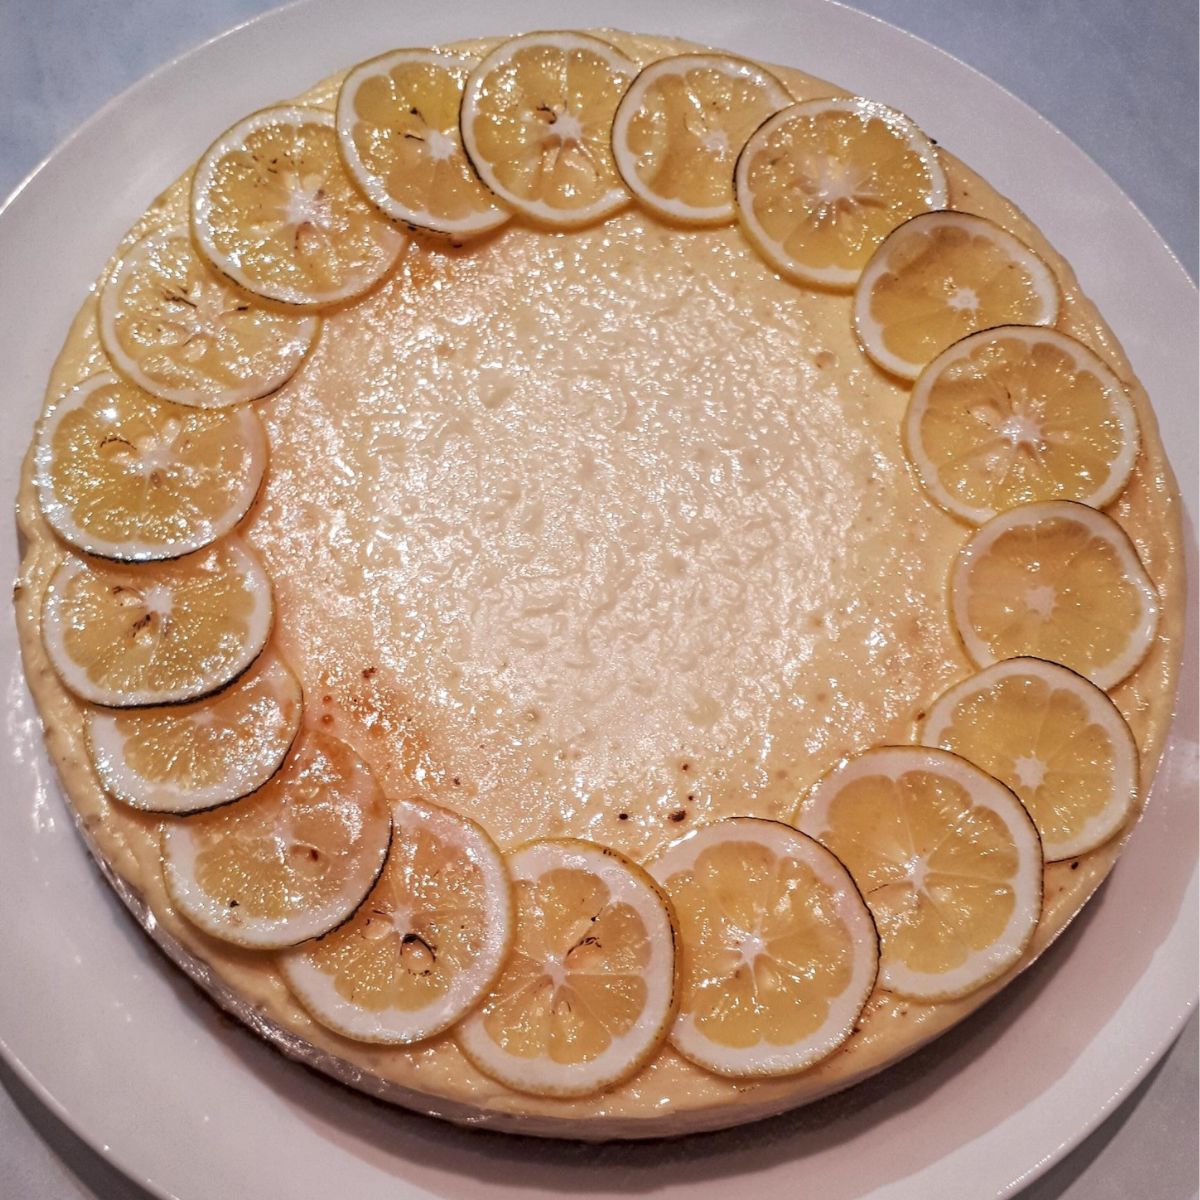 Finished Lemon Baked Cheesecake Recipe